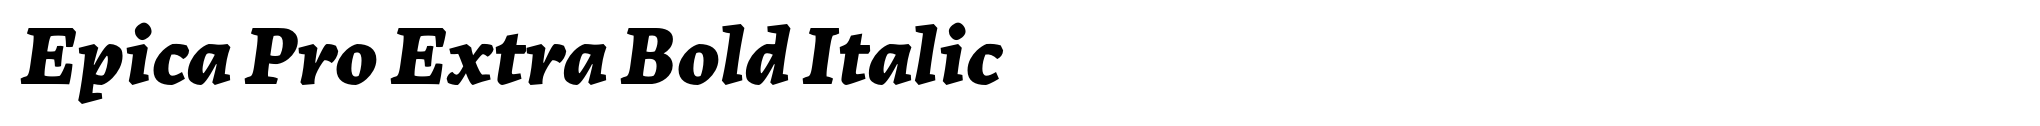 Epica Pro Extra Bold Italic image